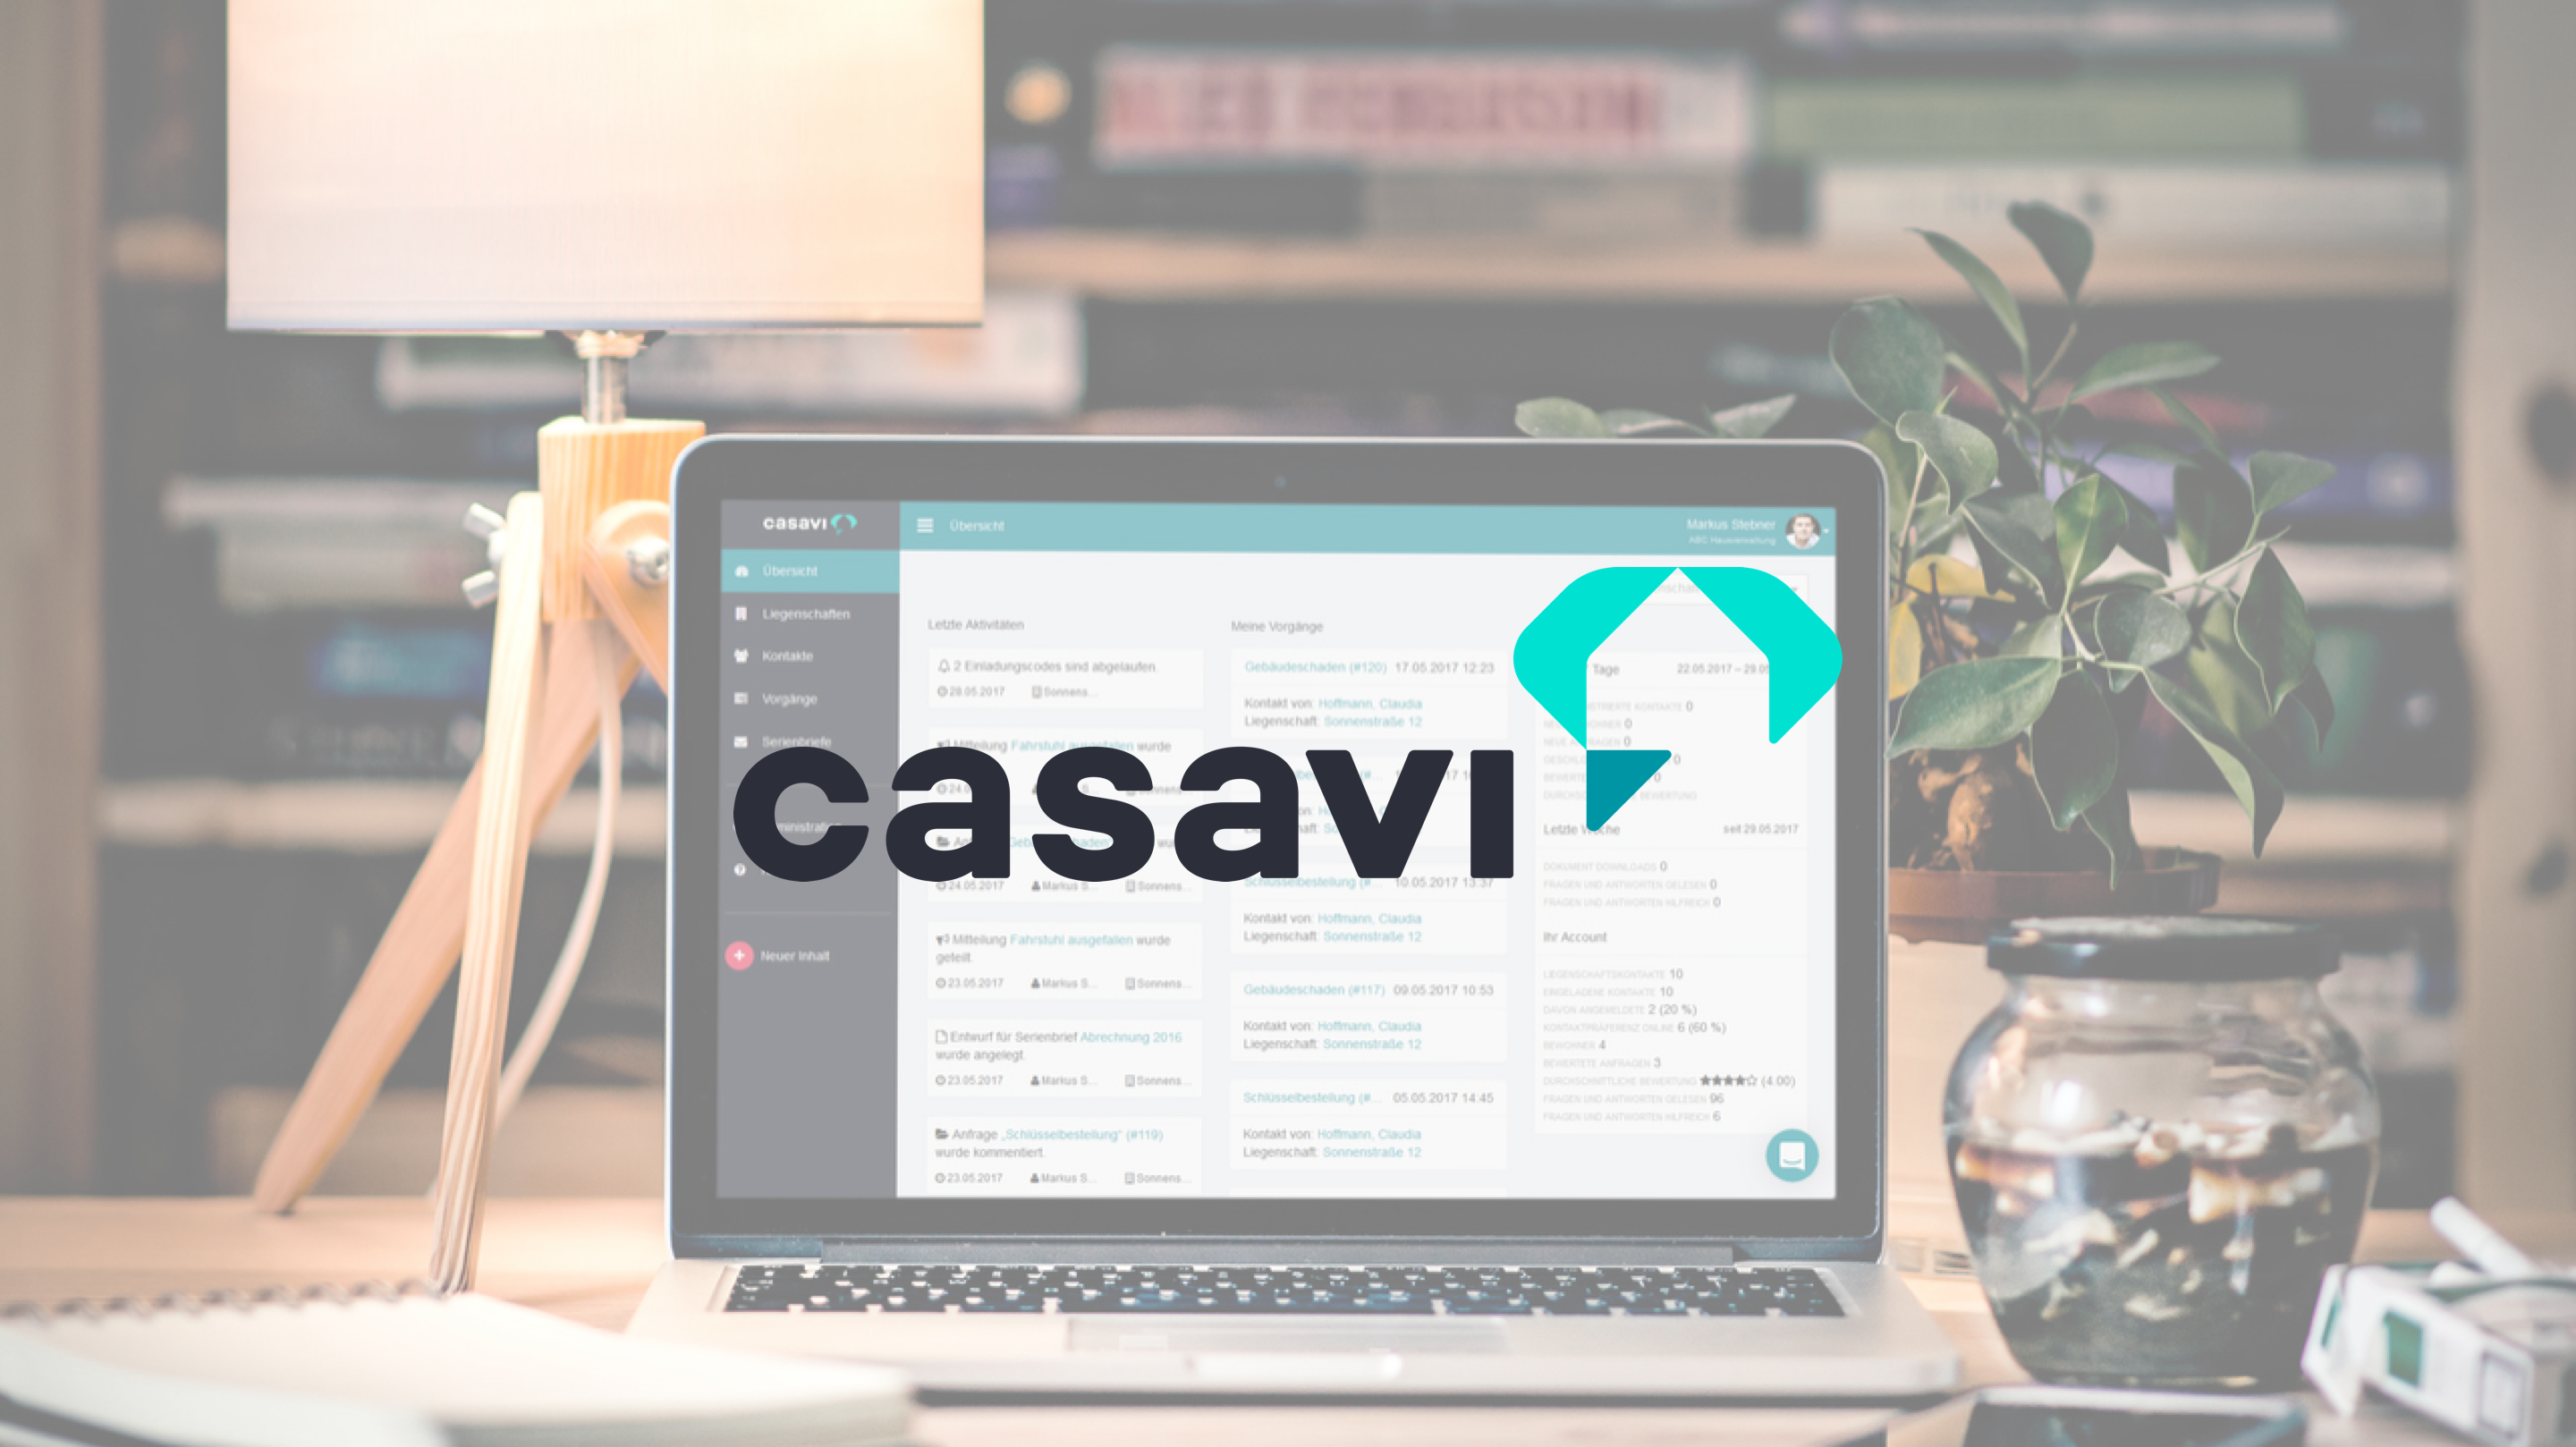 casavi is a PropTech company